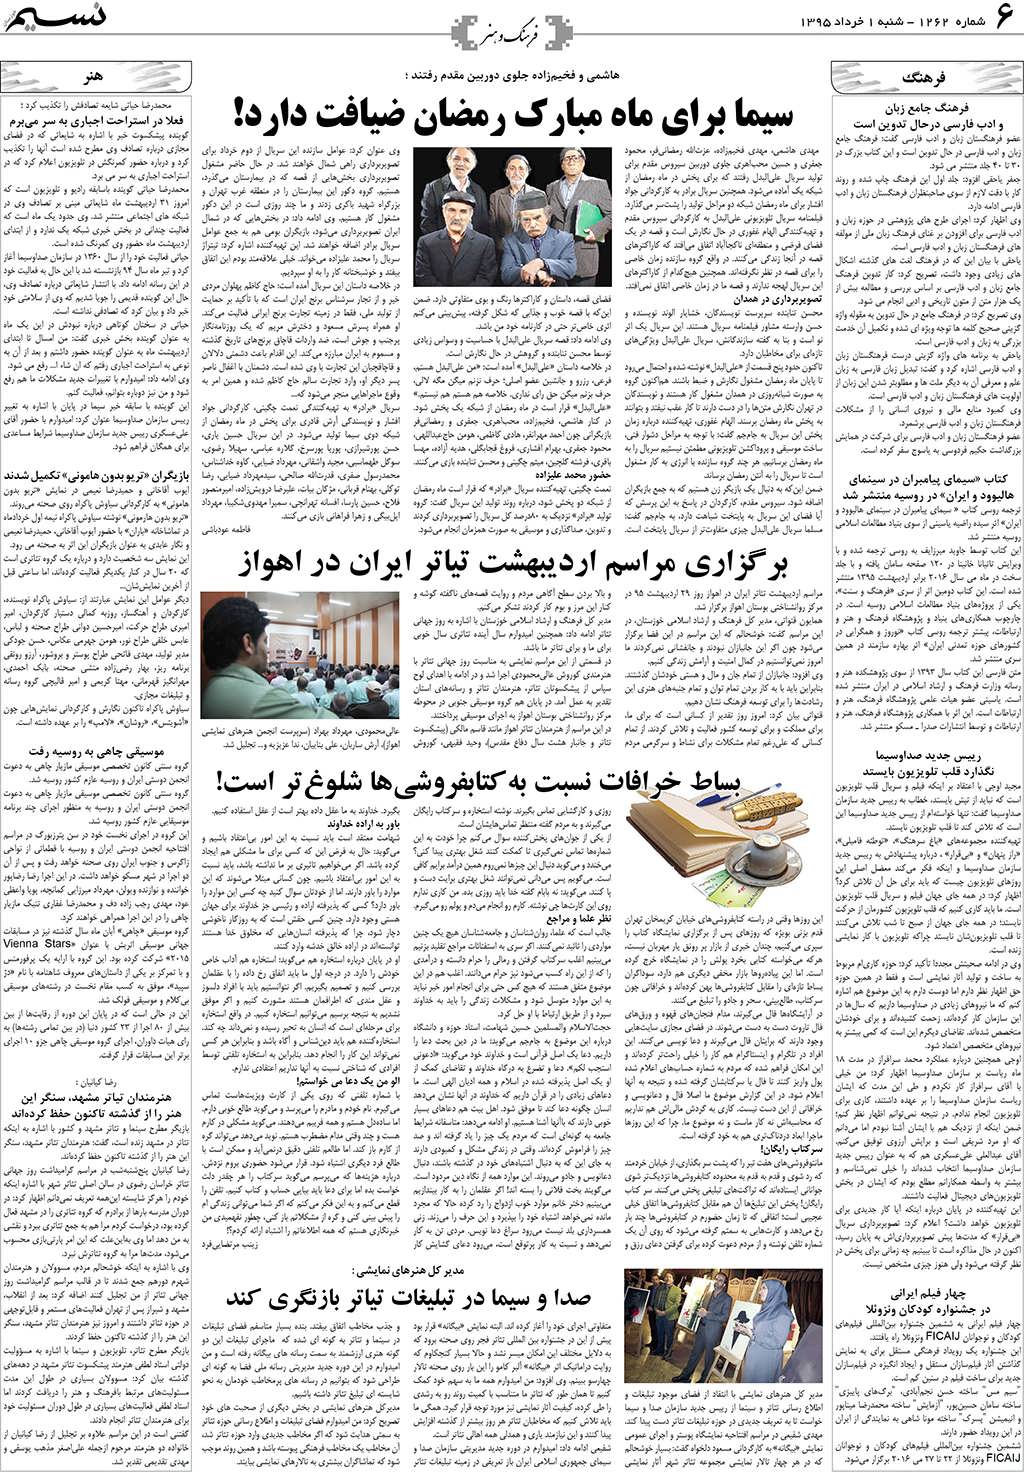 صفحه فرهنگ و هنر روزنامه نسیم شماره 1262